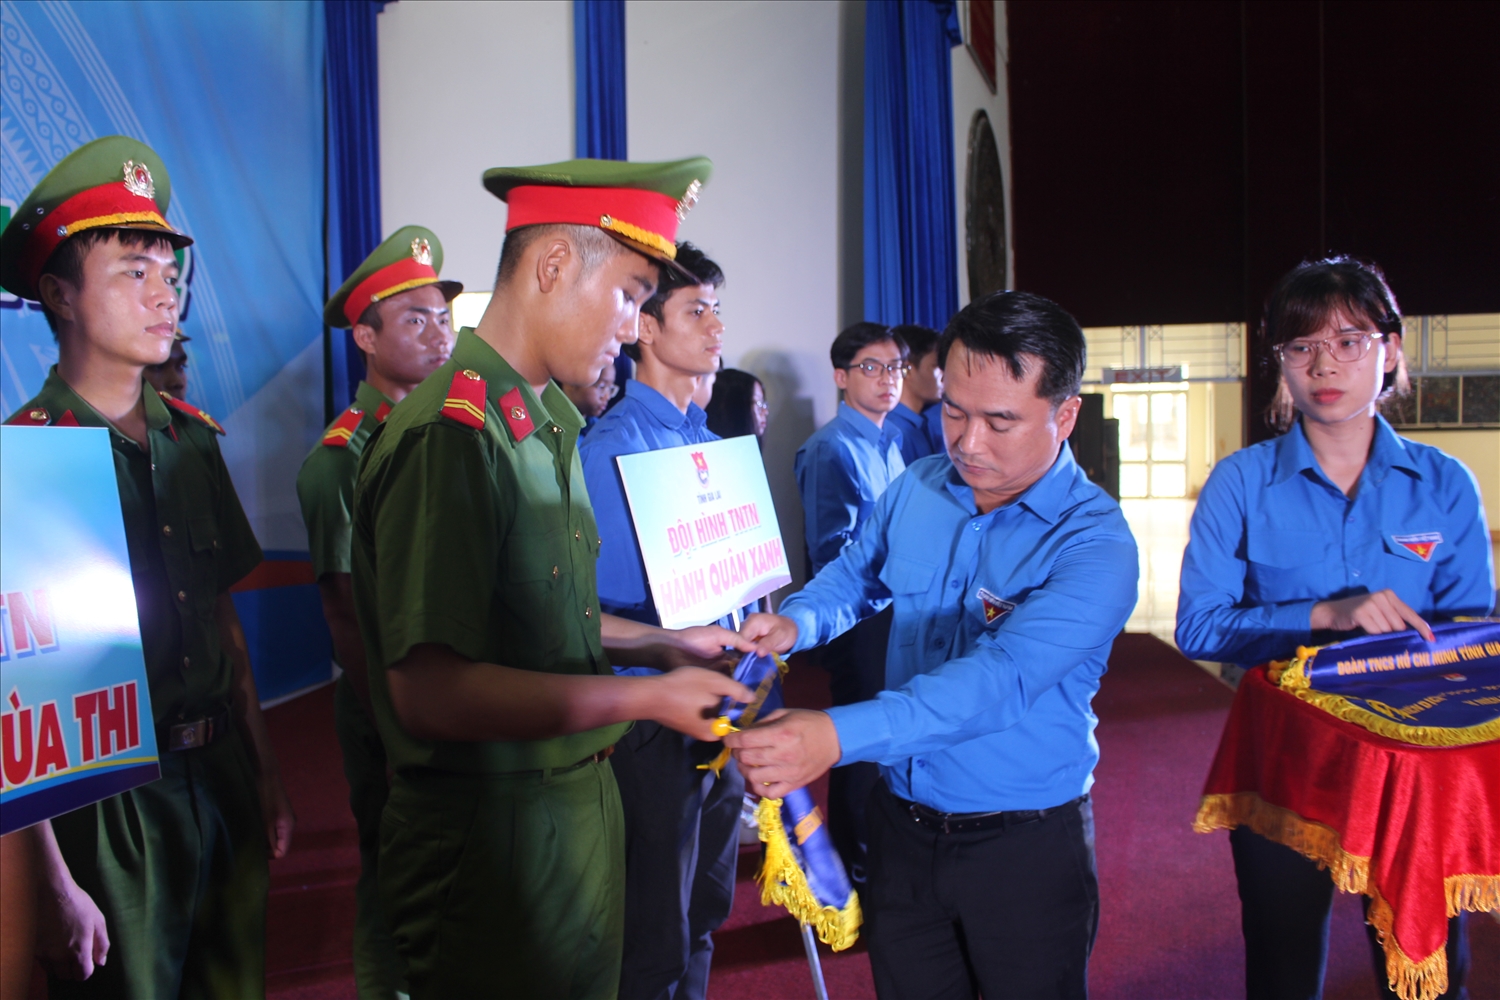 Anh Đỗ Duy Nam - Phó Bí thư Tỉnh Đoàn Gia Lai, Chỉ huy trưởng Chiến dịch Thanh niên tình nguyện hè năm 2022 tặng cờ lưu niệm cho đội hình thanh niên tình nguyện Hành quân xanh